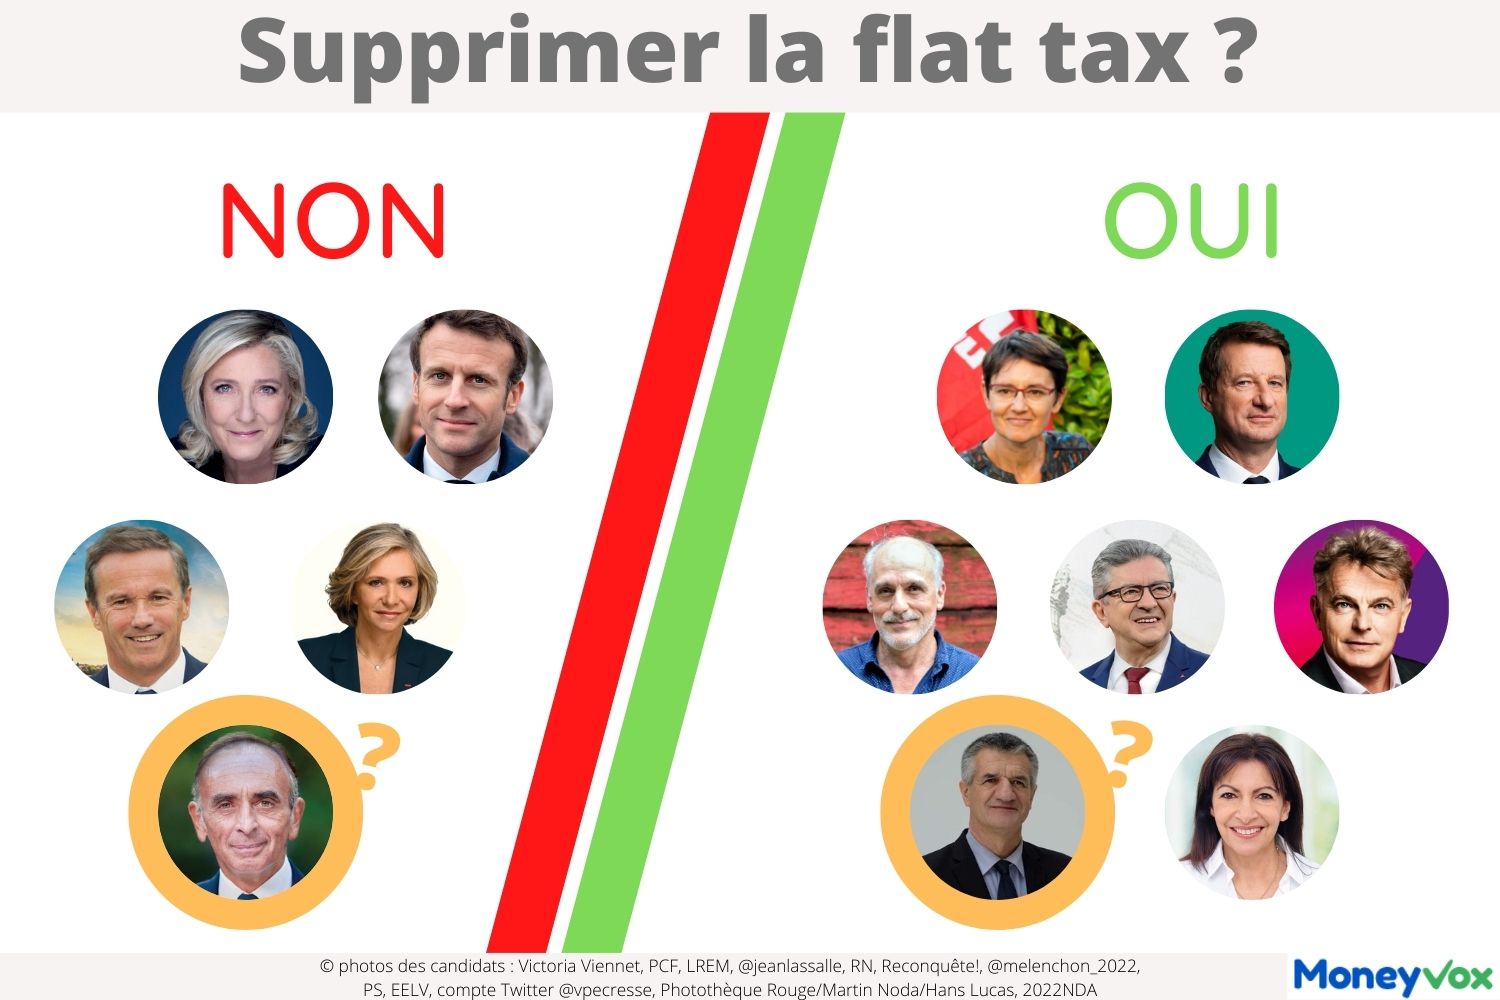 Prsidentielle Flat tax